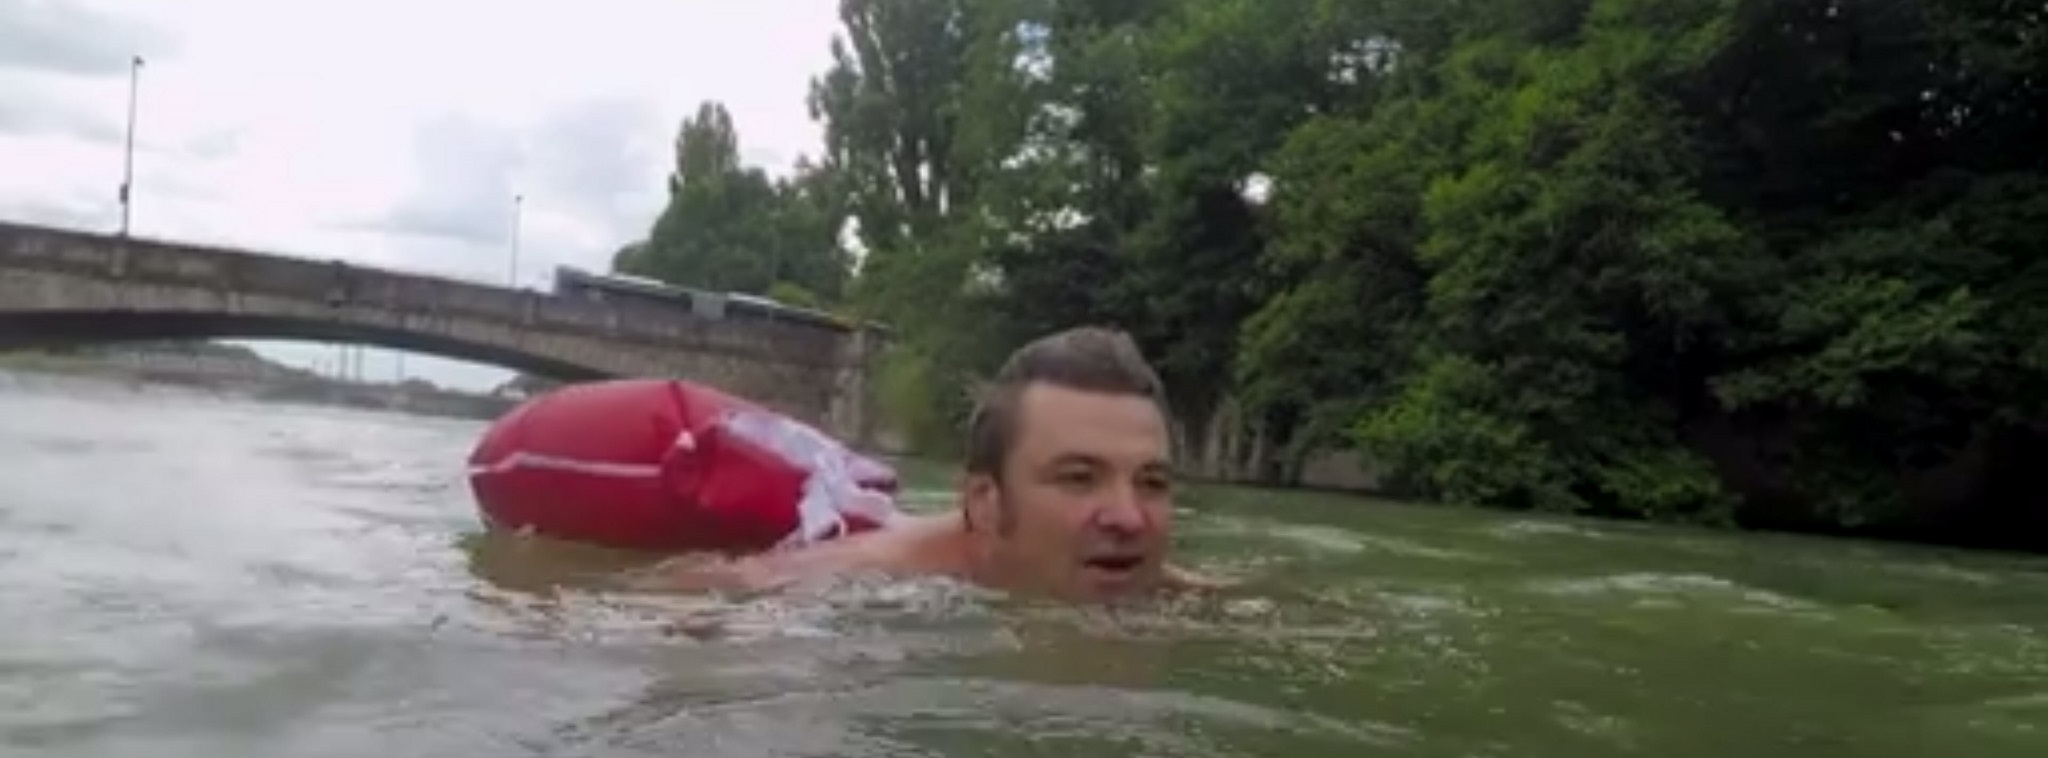 Người đàn ông bơi sông 2km mỗi ngày để đi làm ở Đức